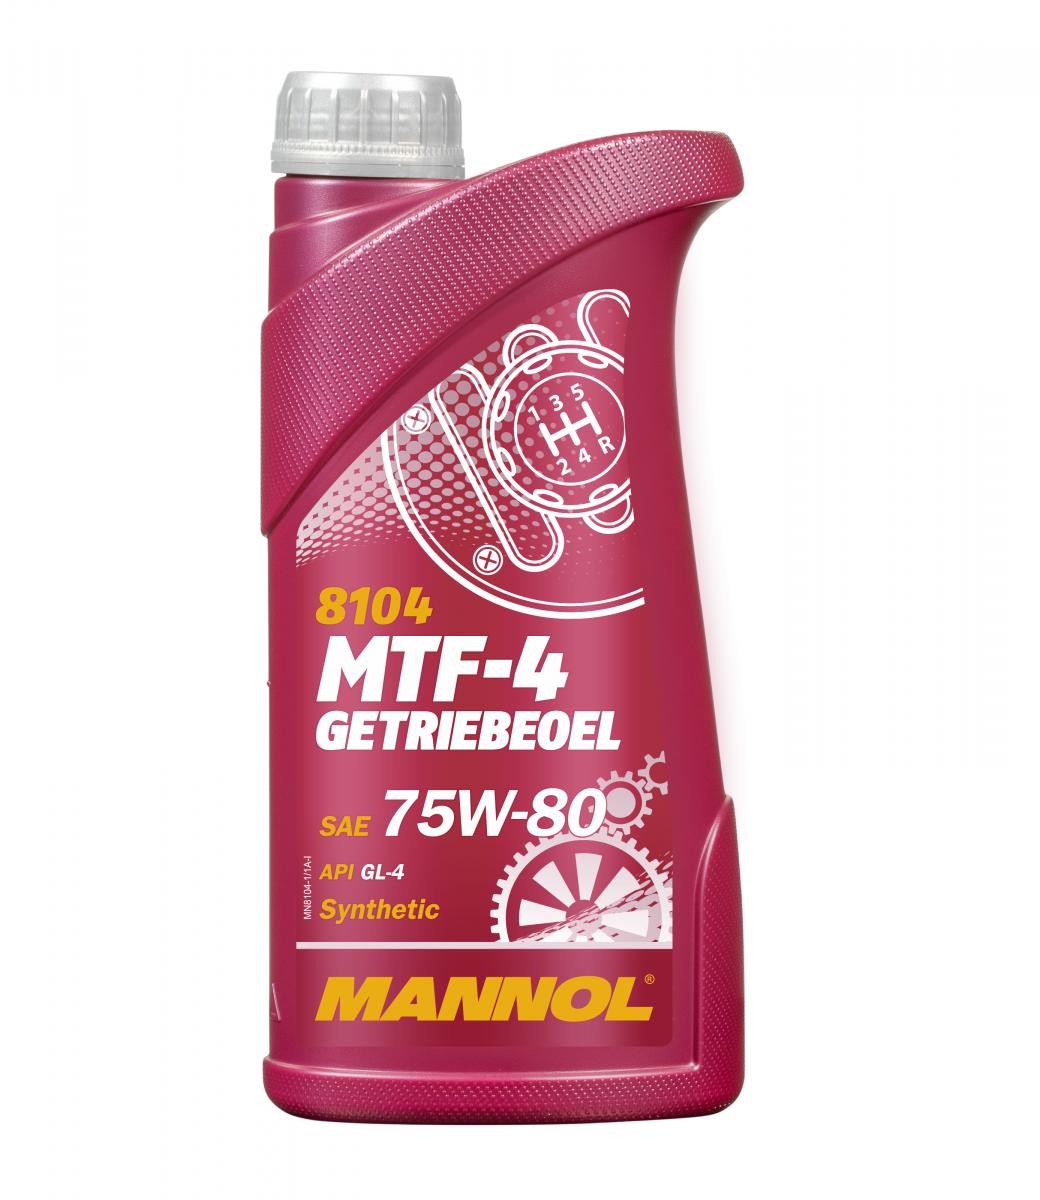 MANNOL MTF-4, GL-4 MN8104-1 CF MOTO Getriebeöl Motorrad zum günstigen Preis